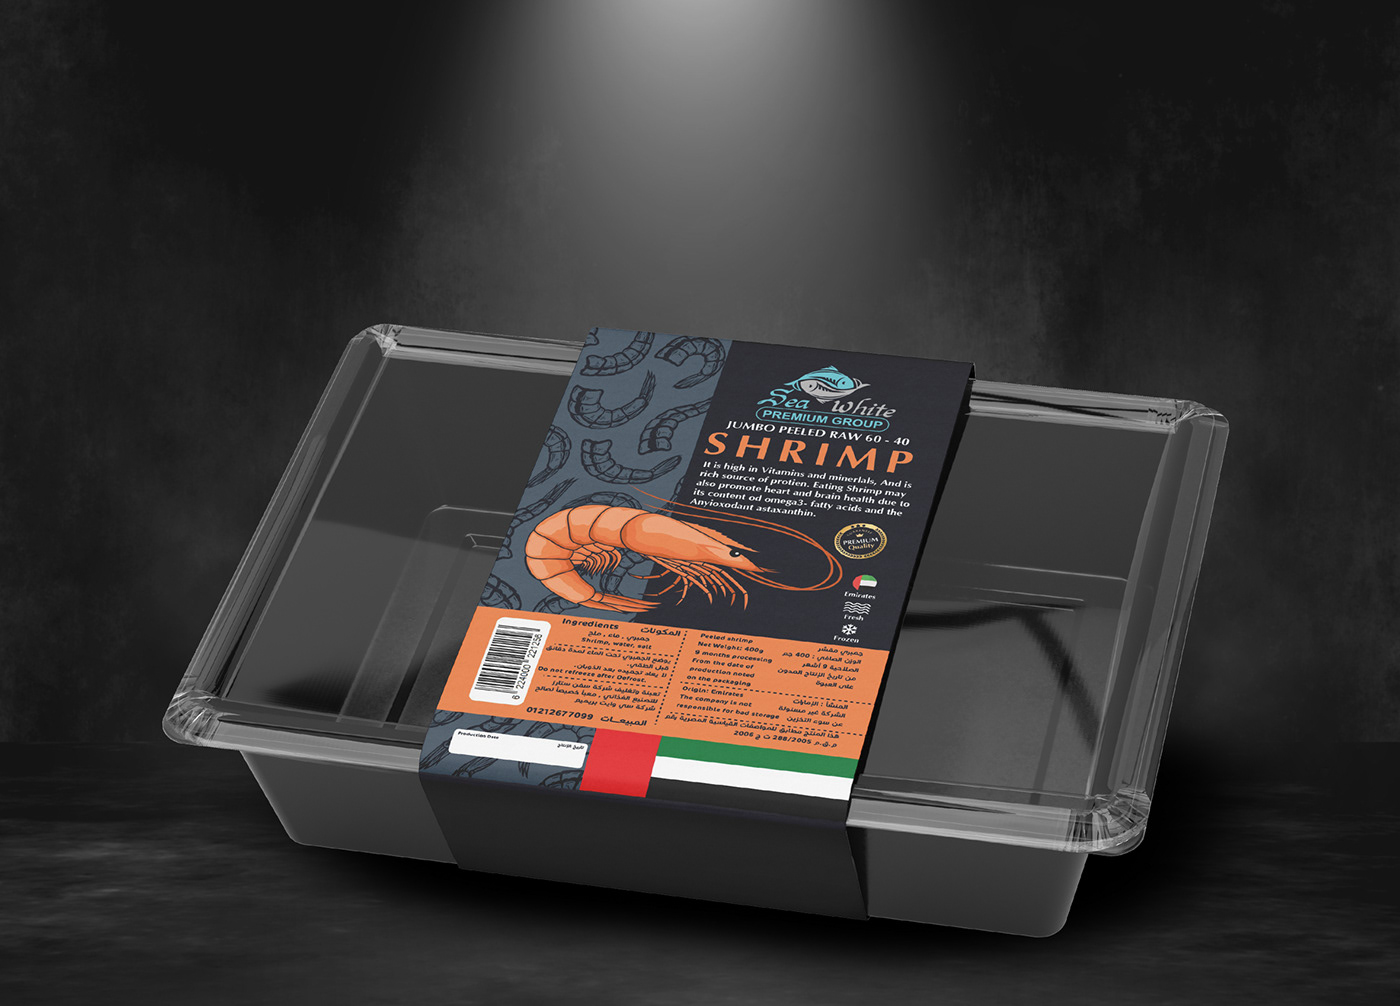 Packaging packaging design Food Packaging Label label design product product design  product packaging package design  box design